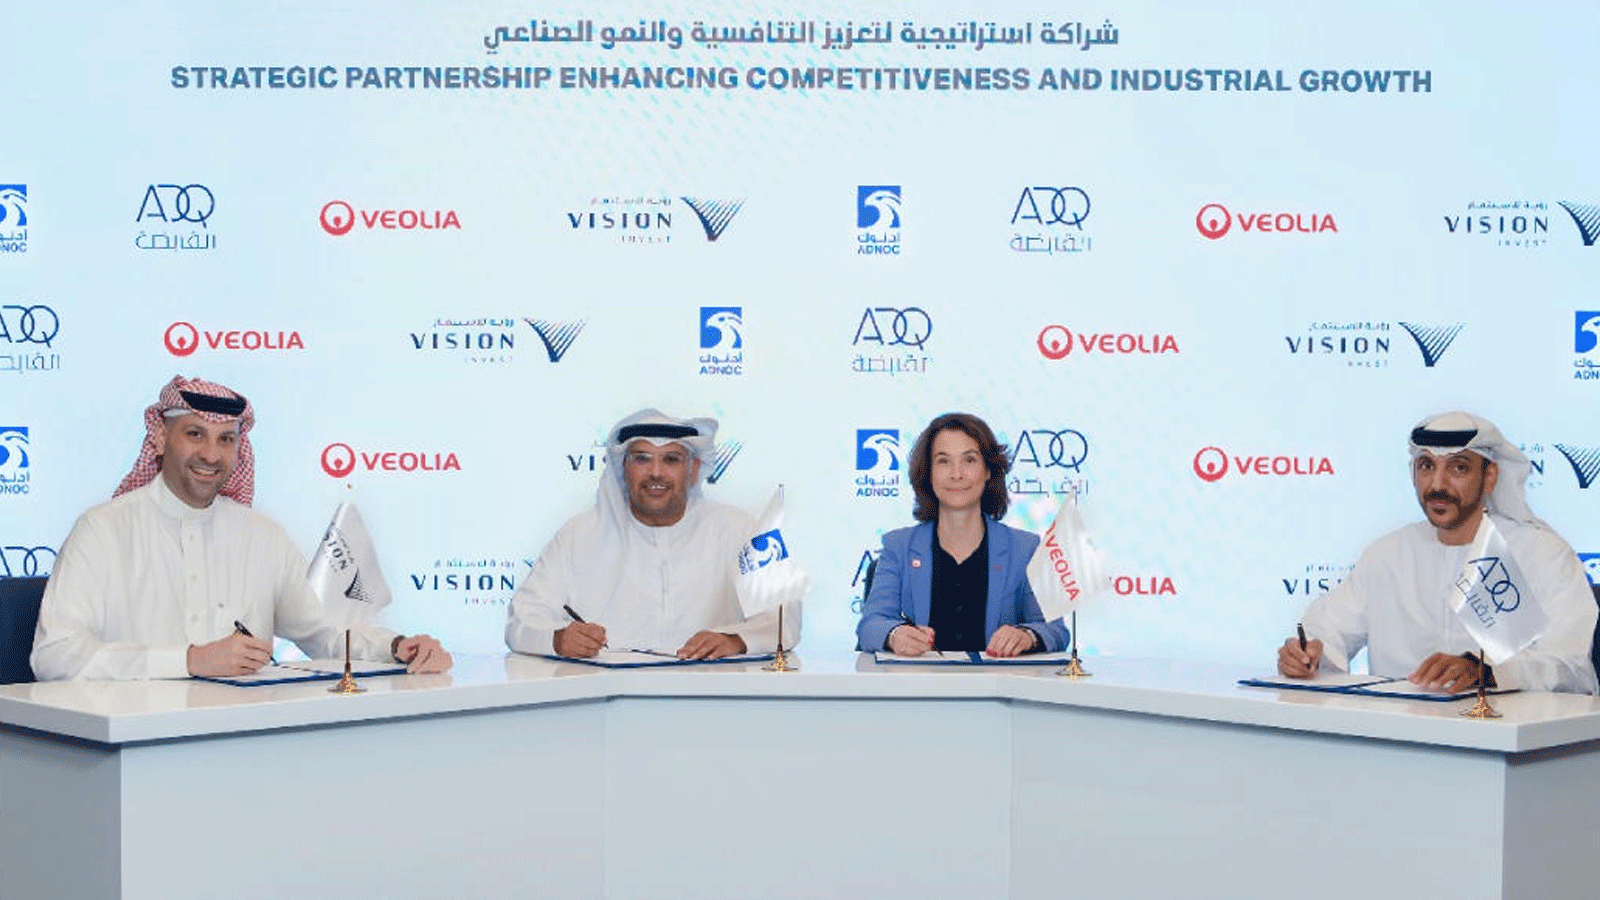 شركة فيوليا الفرنسية تعمل مع أدونك ابوظبي على تسريع تطوير أنشطة معالجة النفايات الخطرة في الشرق الأوسط(تويتر)